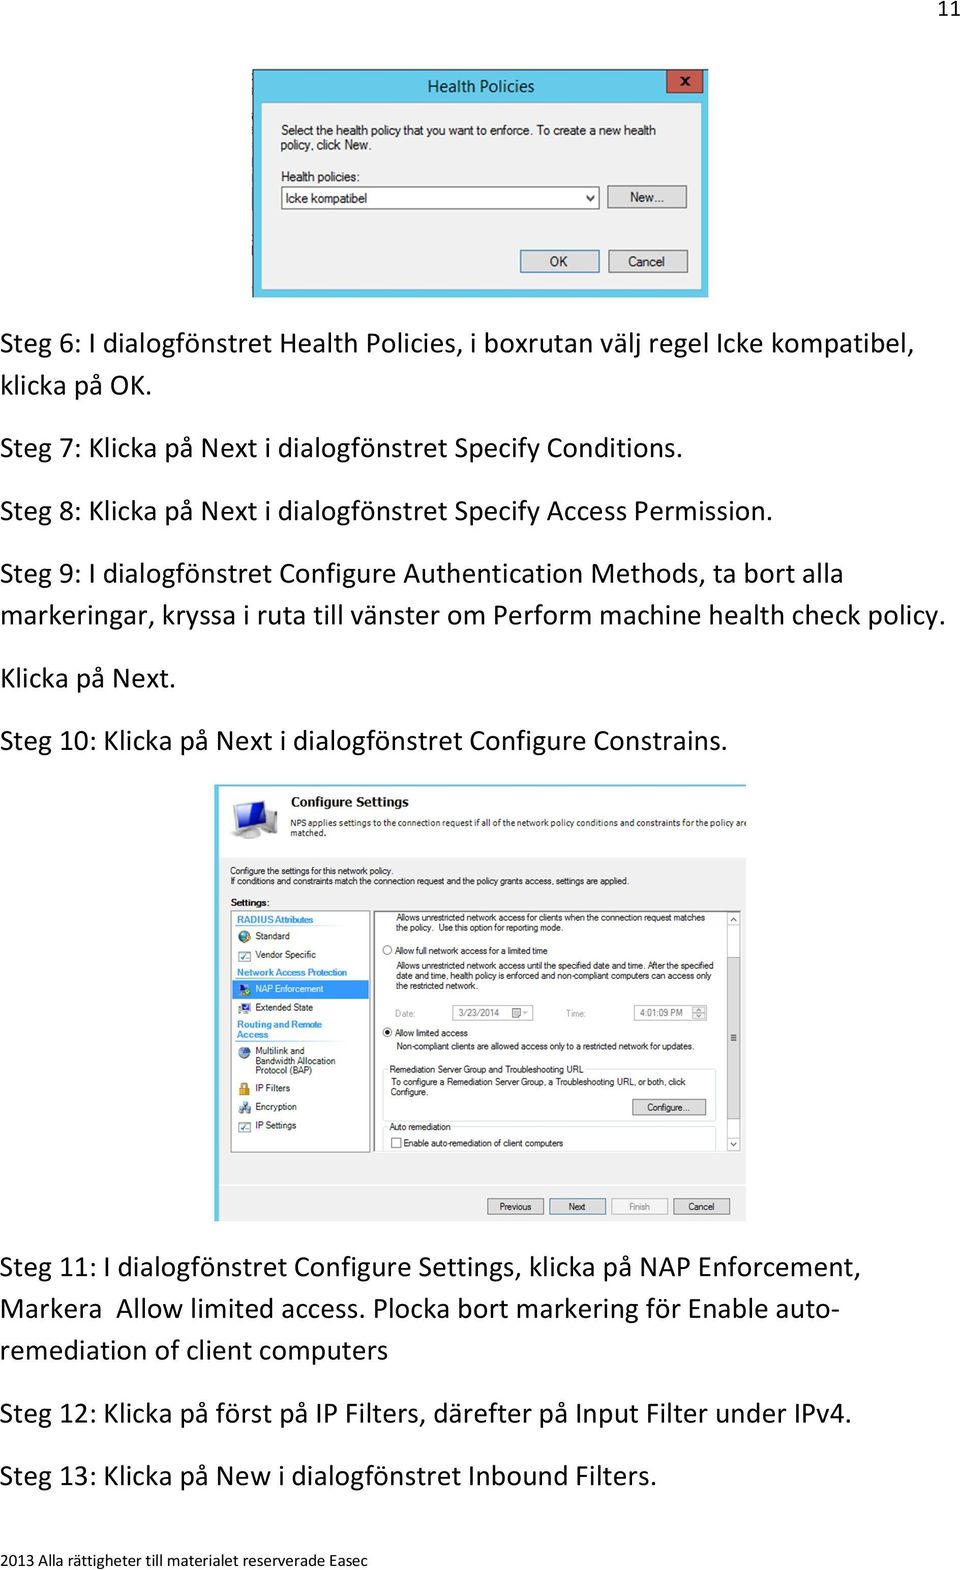 Steg 9: I dialogfönstret Configure Authentication Methods, ta bort alla markeringar, kryssa i ruta till vänster om Perform machine health check policy. Klicka på Next.